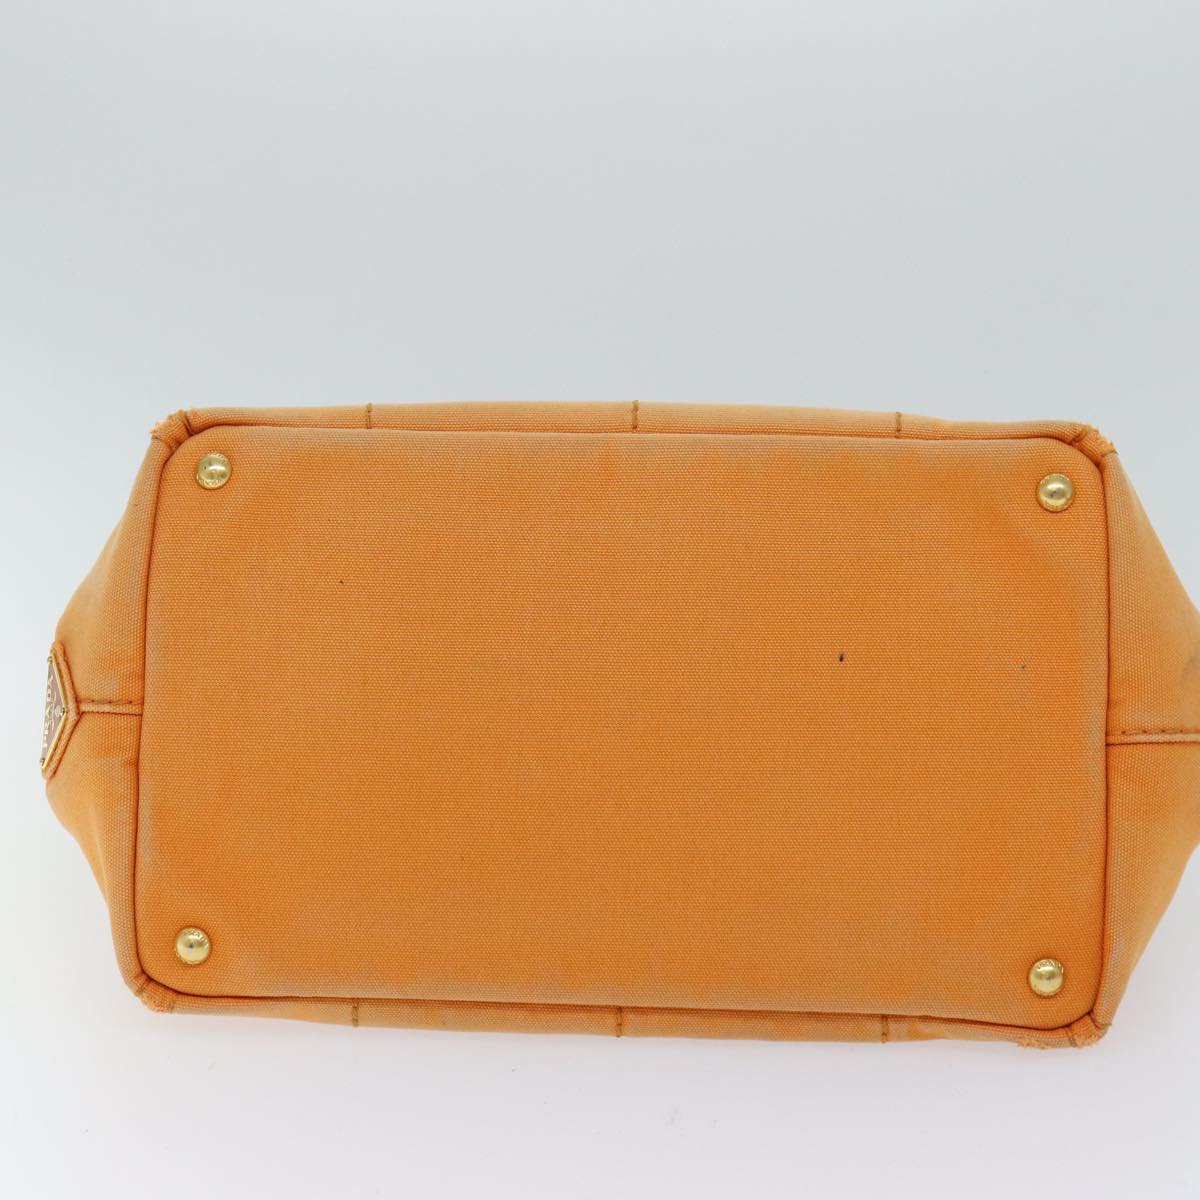 PRADA Canapa MM Hand Bag Canvas Orange Auth 70580